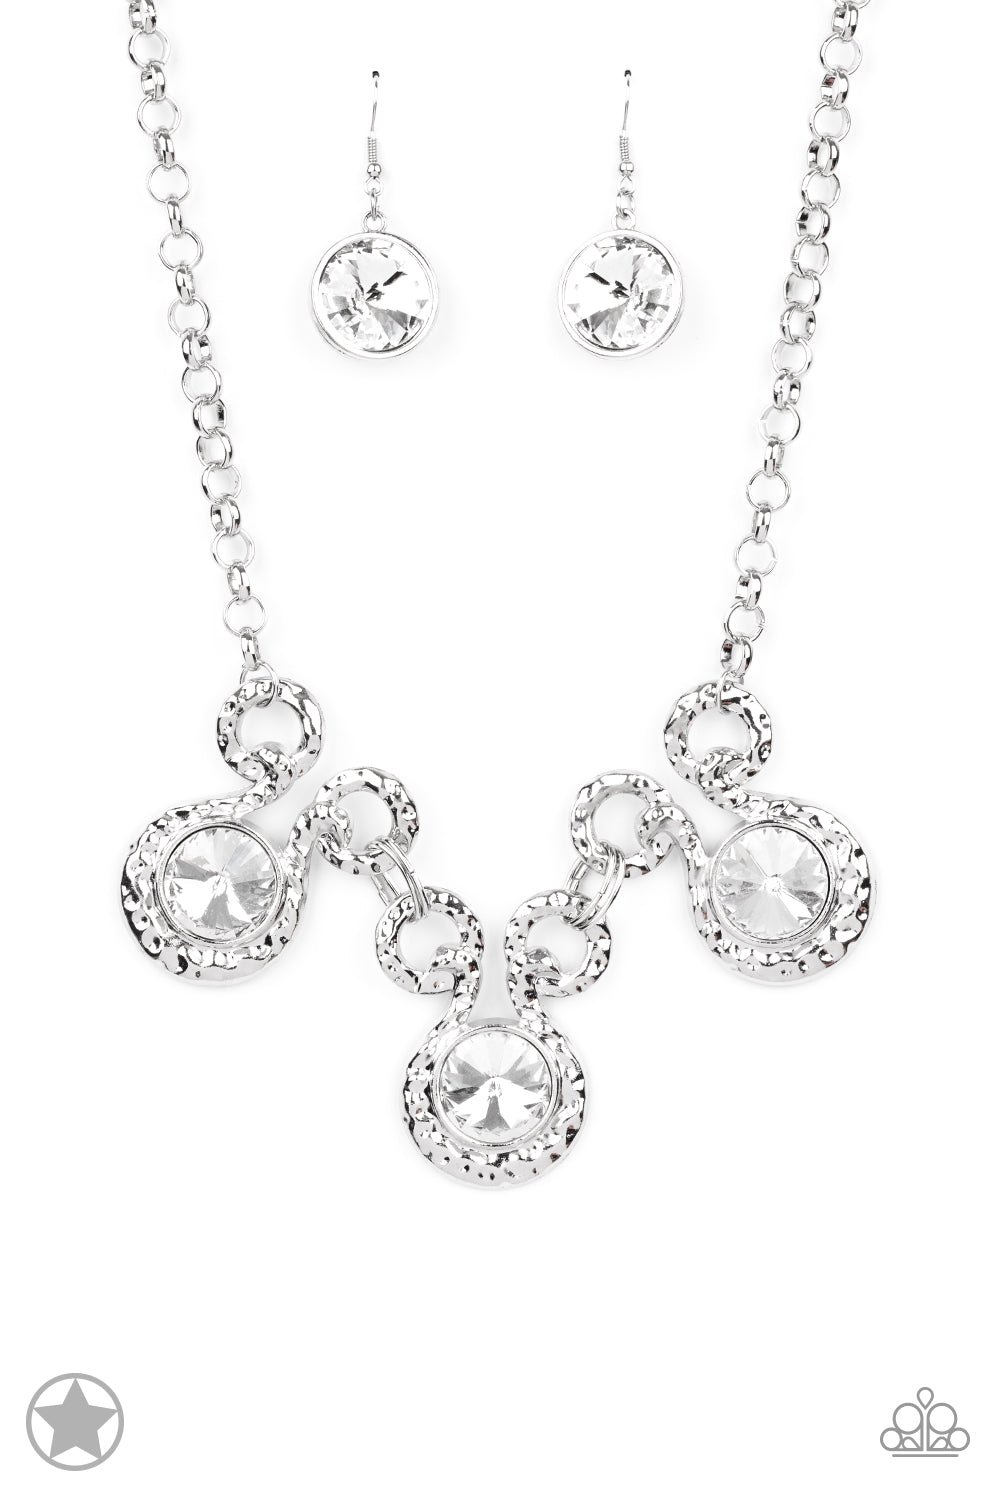 . Hypnotized - Silver Necklace